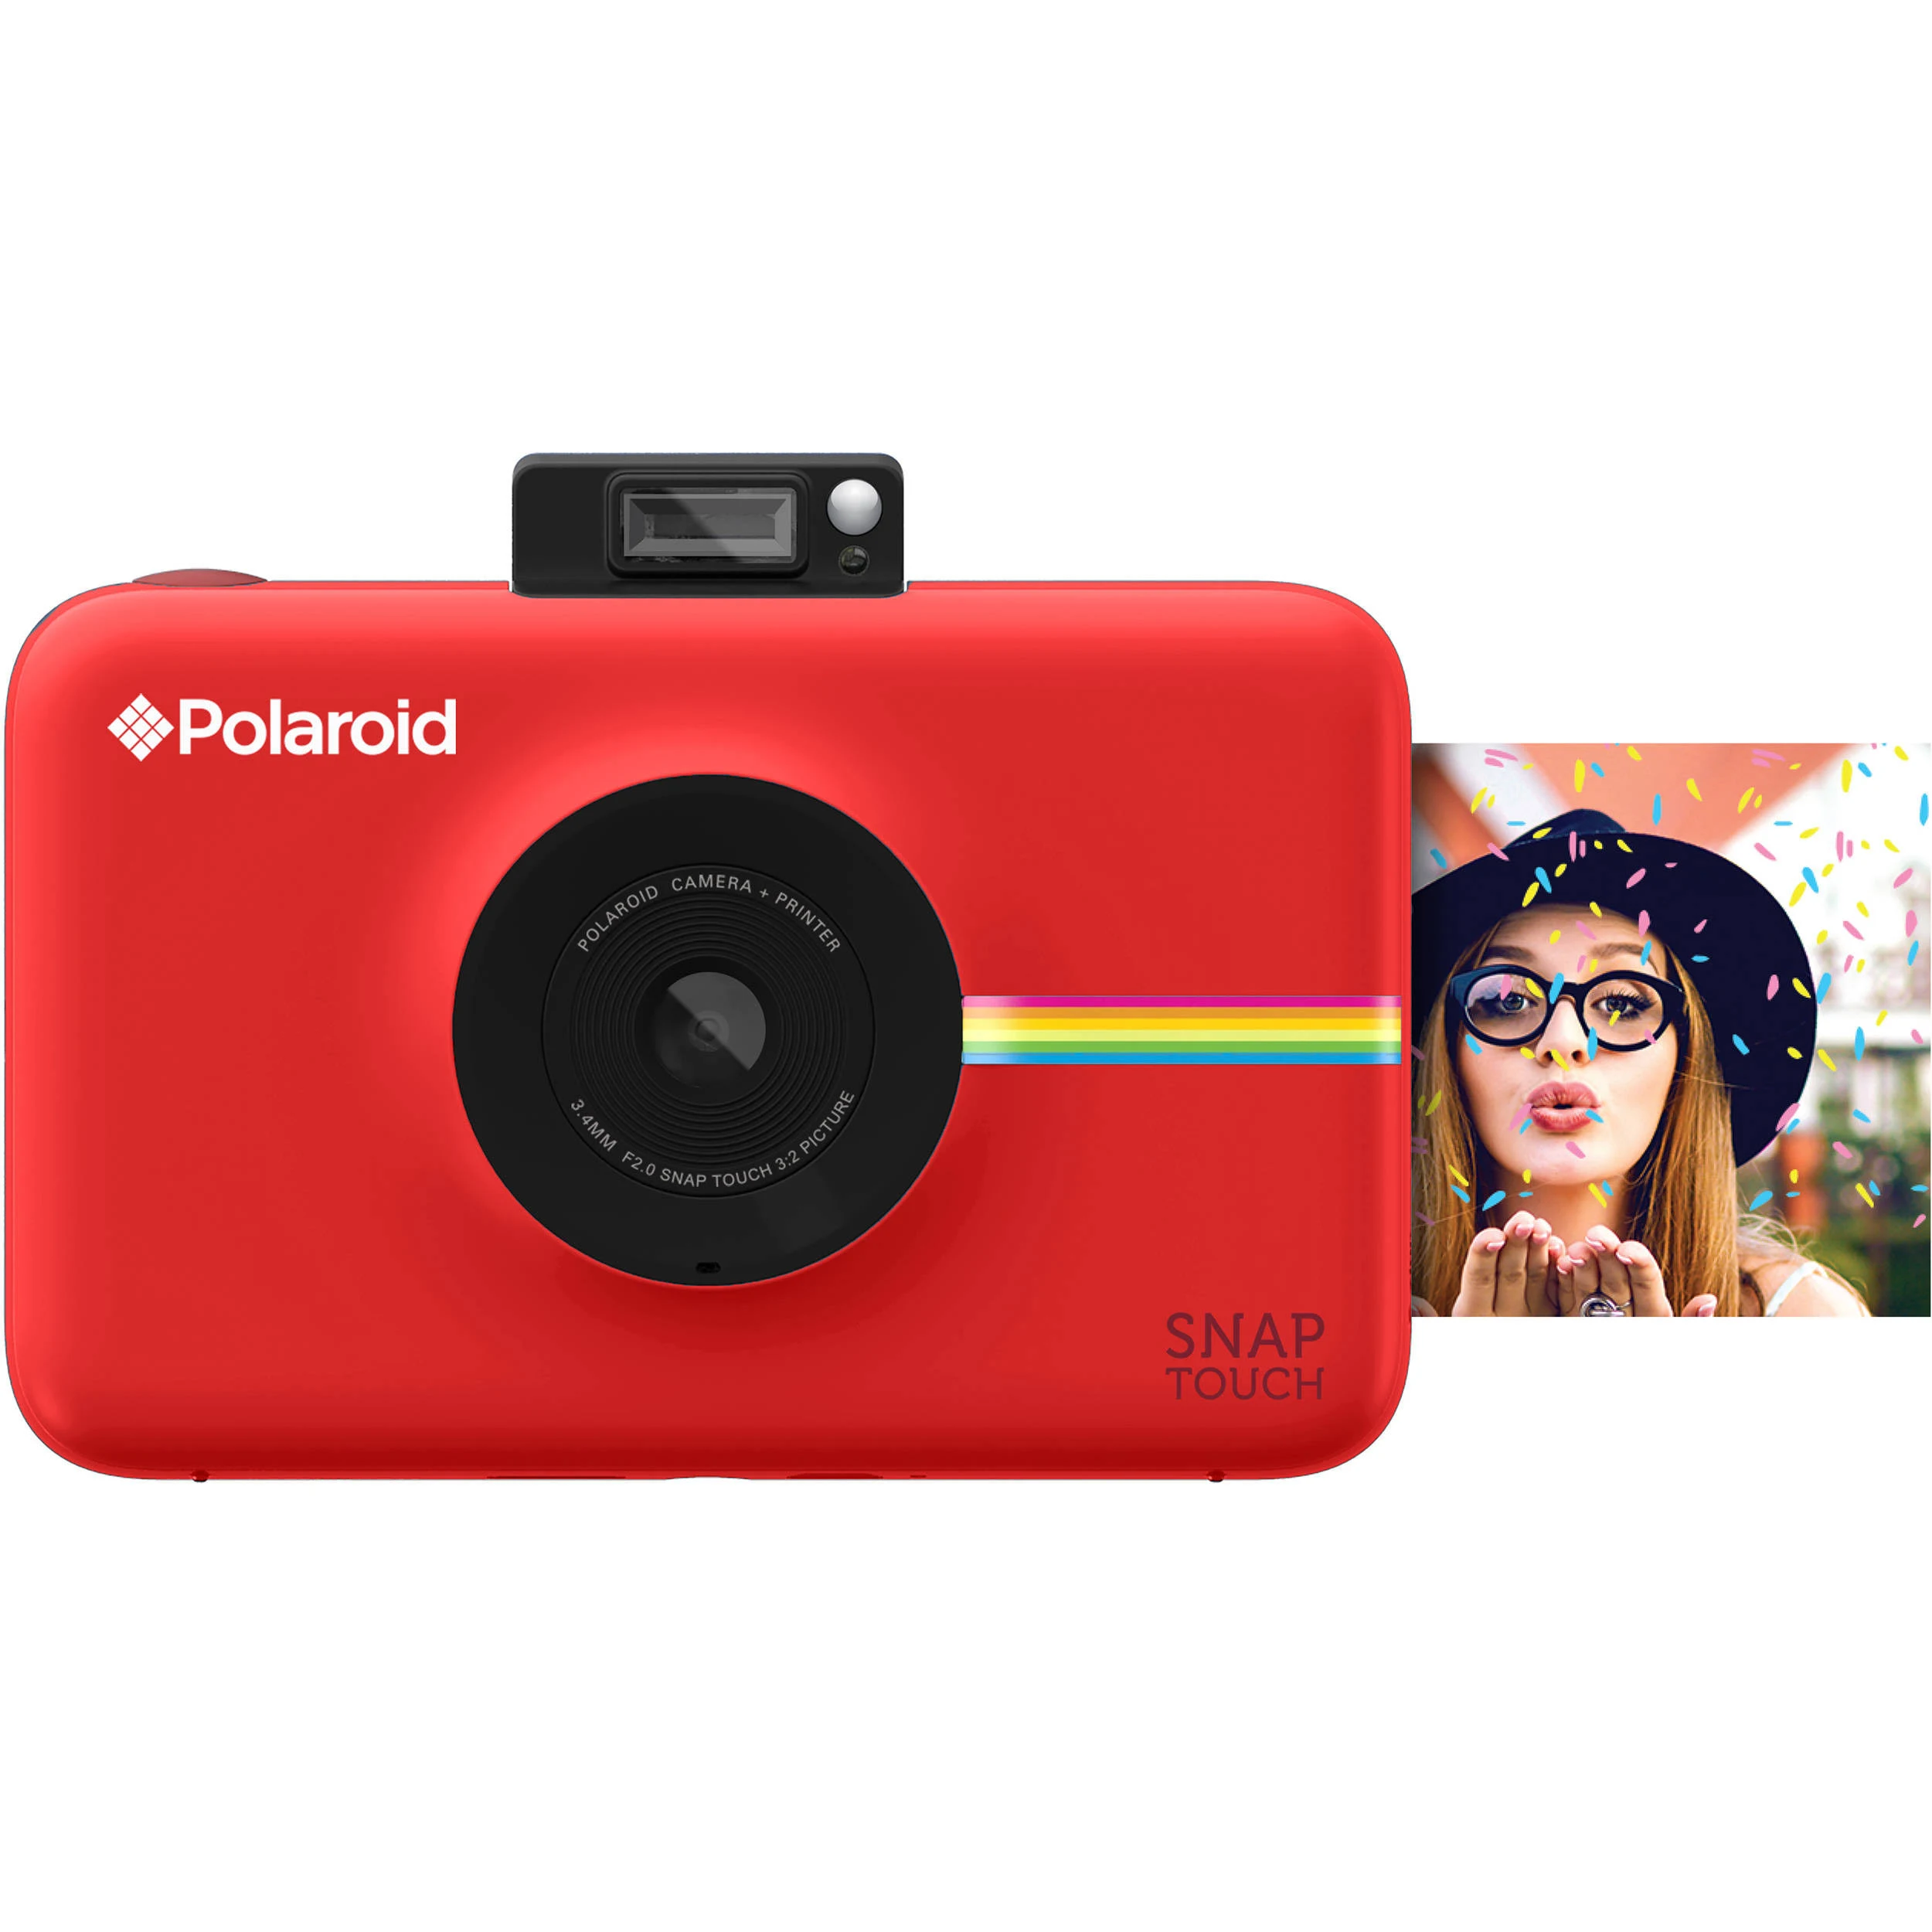  Polaroid स्नैप टच इंस्टेंट प्रिंट डिजिटल कैमरा विथ एलसीडी डिस्प्ले (रेड) जिंक जीरो...